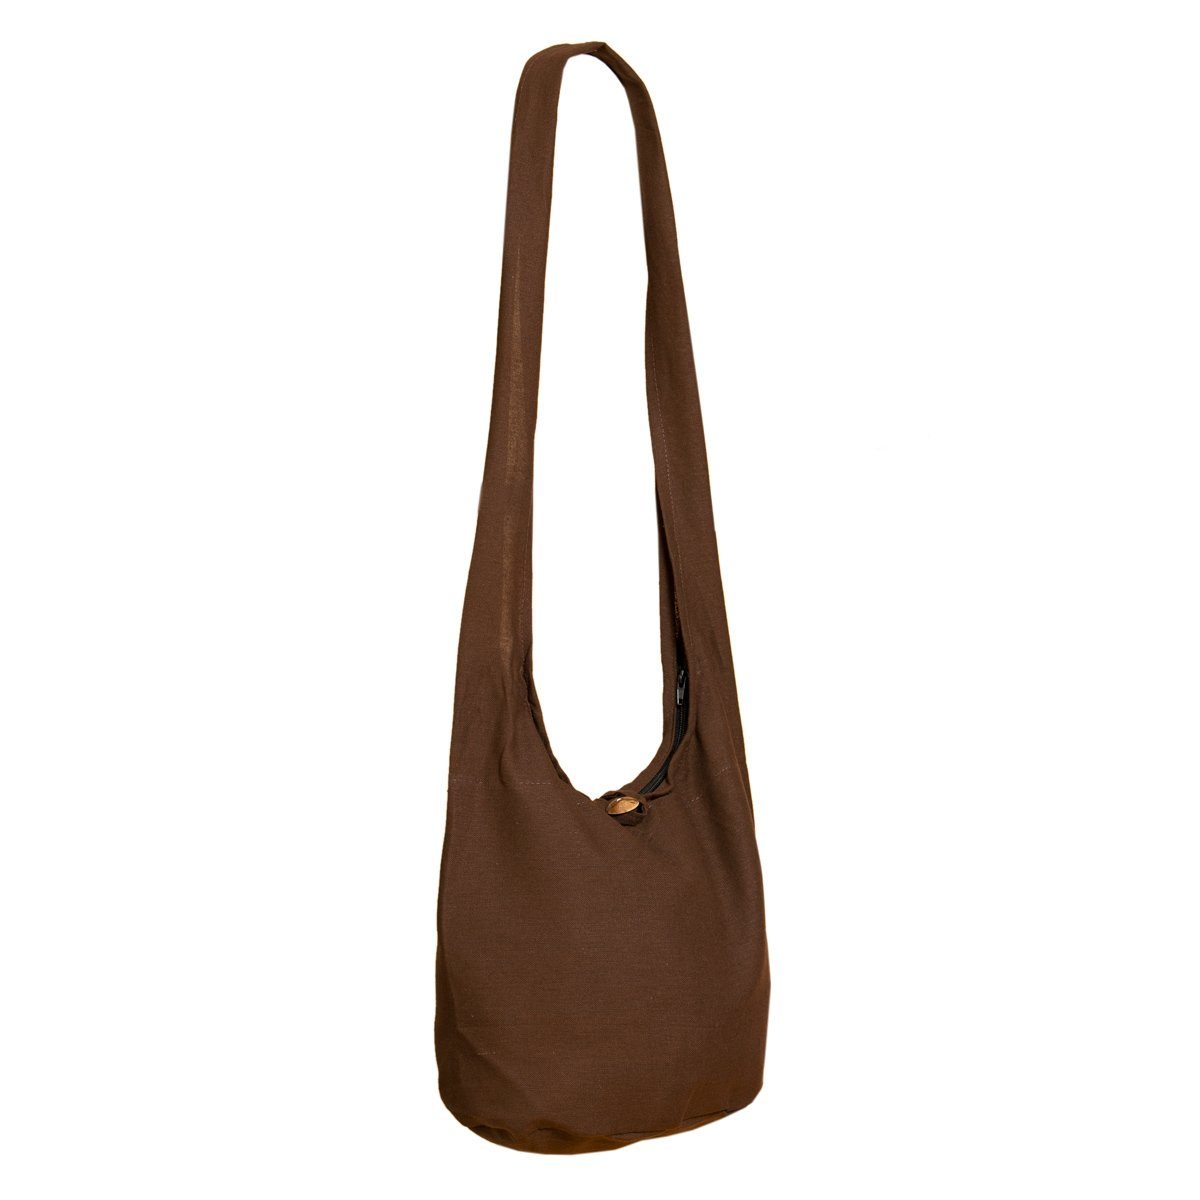 PANASIAM Beuteltasche Schulterbeutel einfarbig Schultertasche aus 100% Baumwolle in 2 Größen, Umhängetasche auch als Wickeltasche Handtasche oder Strandtasche Braun